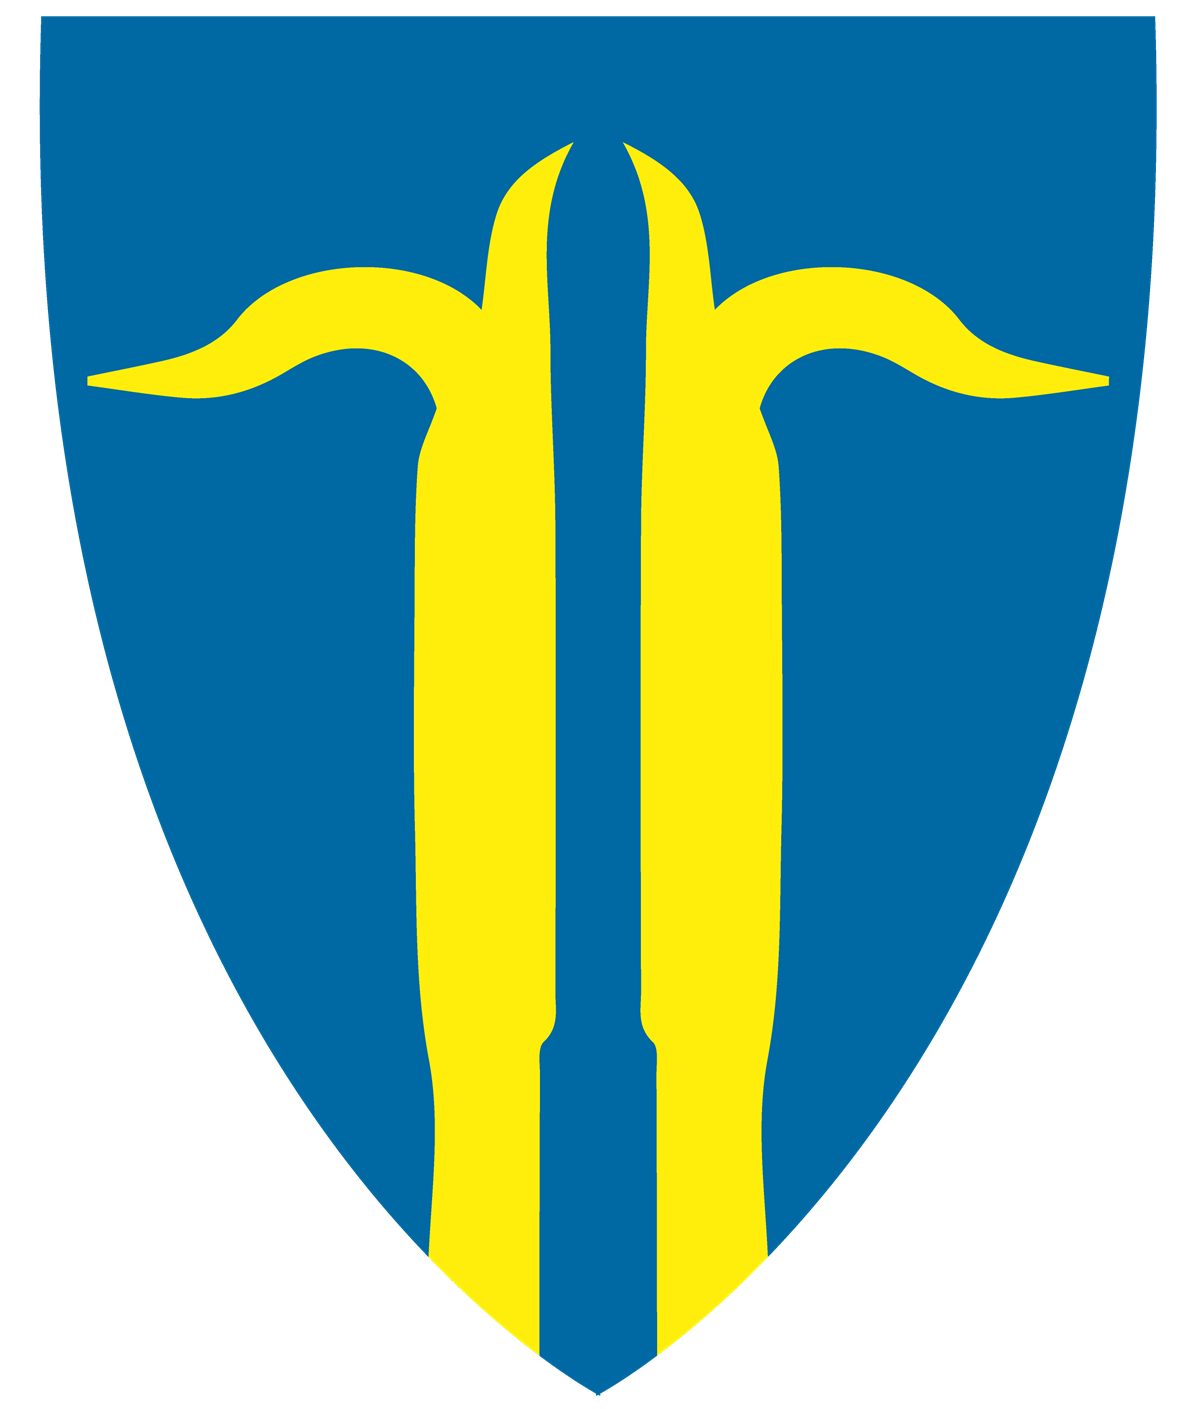 Nordre Land logo